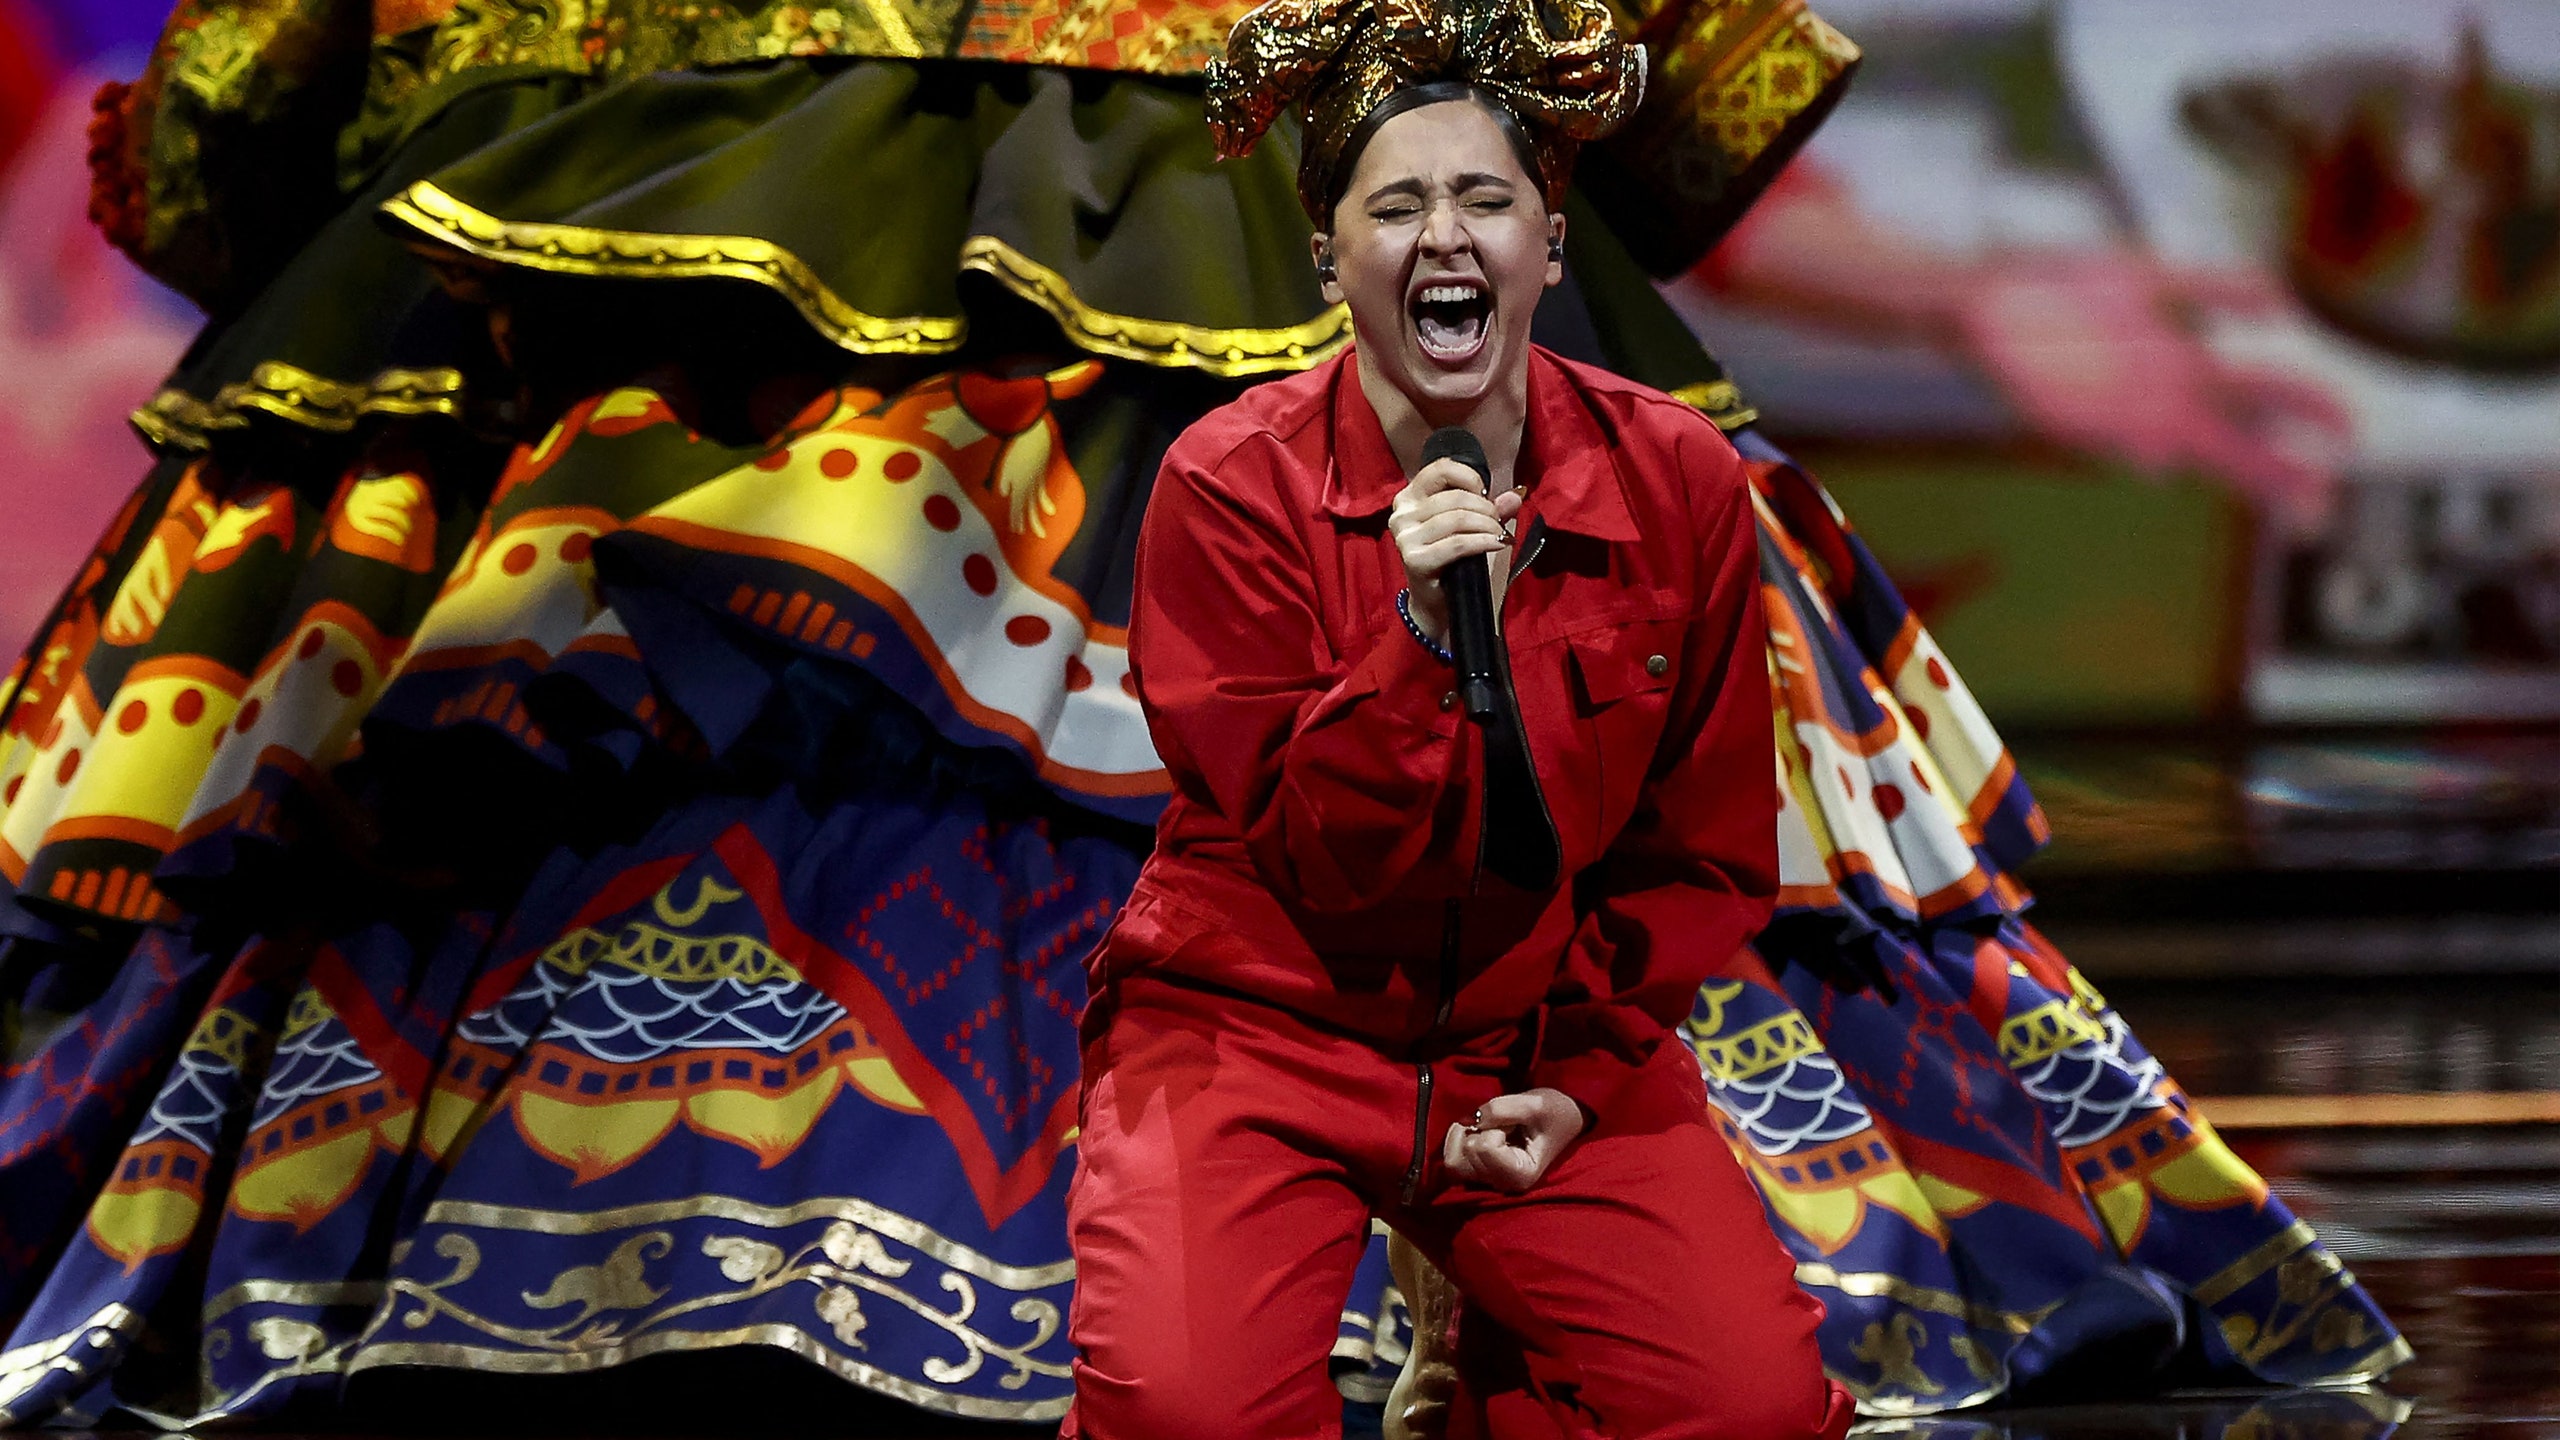 Манижа заняла 9 место на «Евровидении». Победила рокгруппа Måneskin из Италии